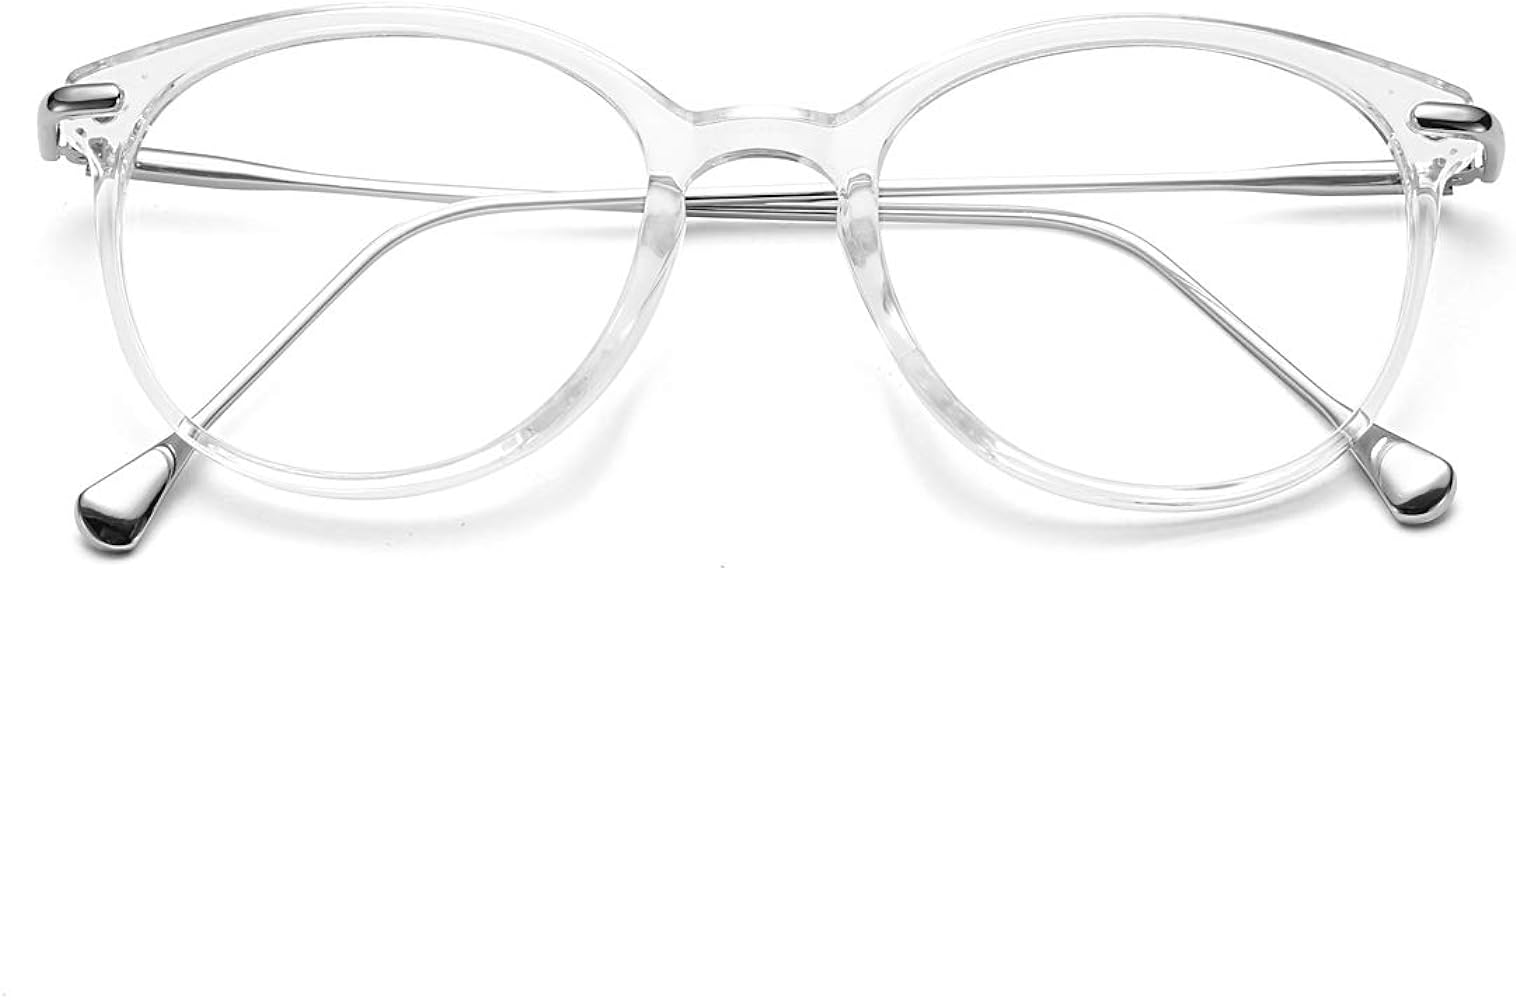 amazon specs frame